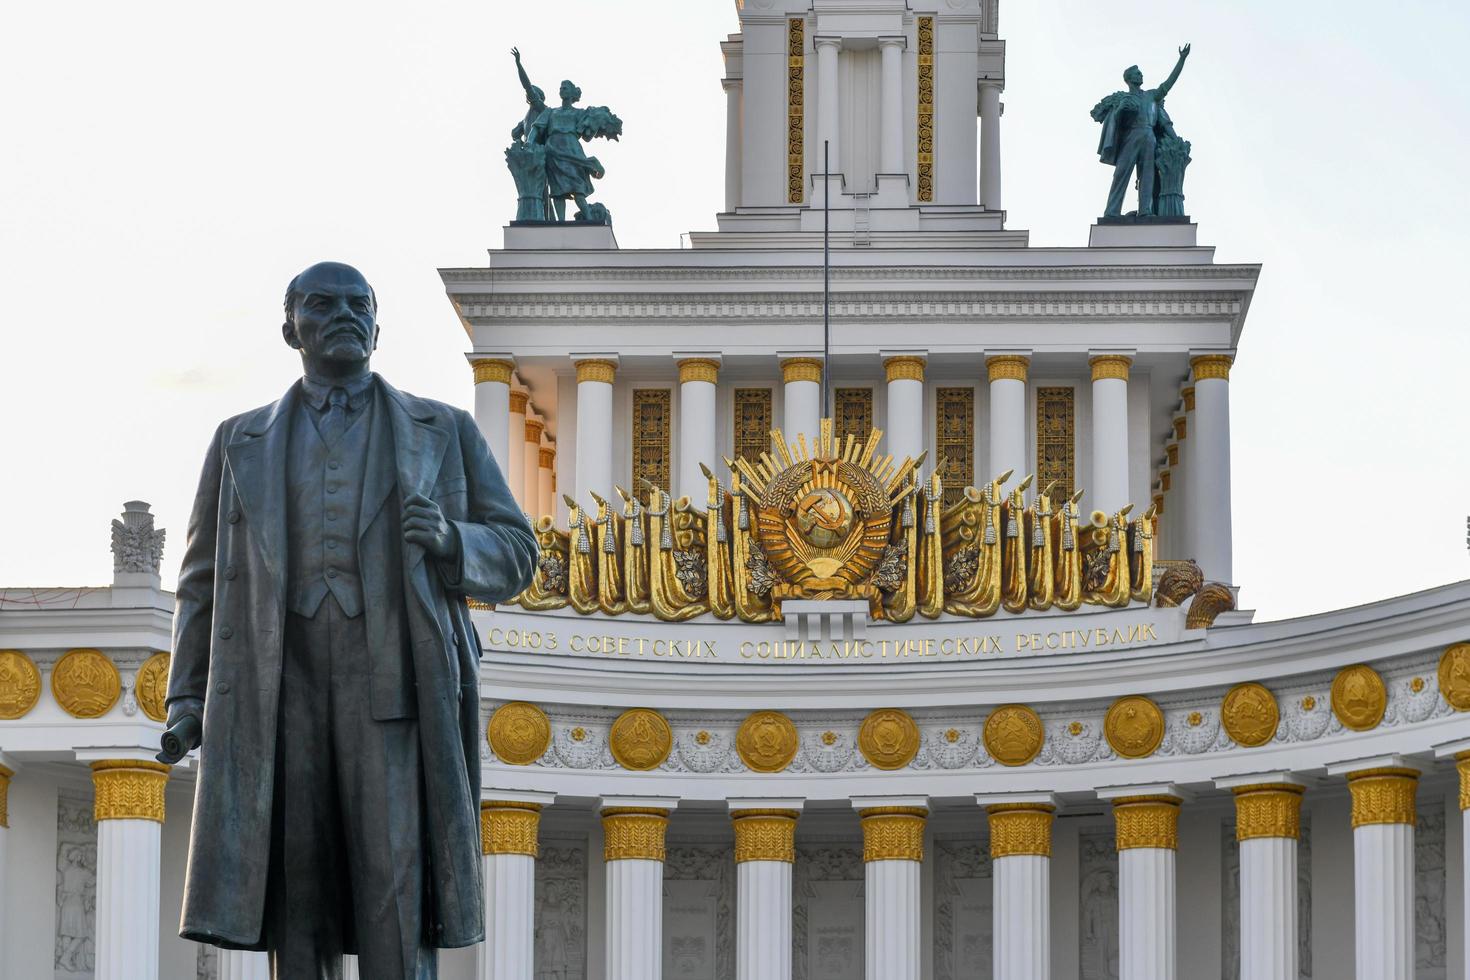 moscou, rússia - 22 de julho de 2019 - monumento a vladimir lenin em frente ao pavilhão central. a exposição de realizações da economia nacional foto